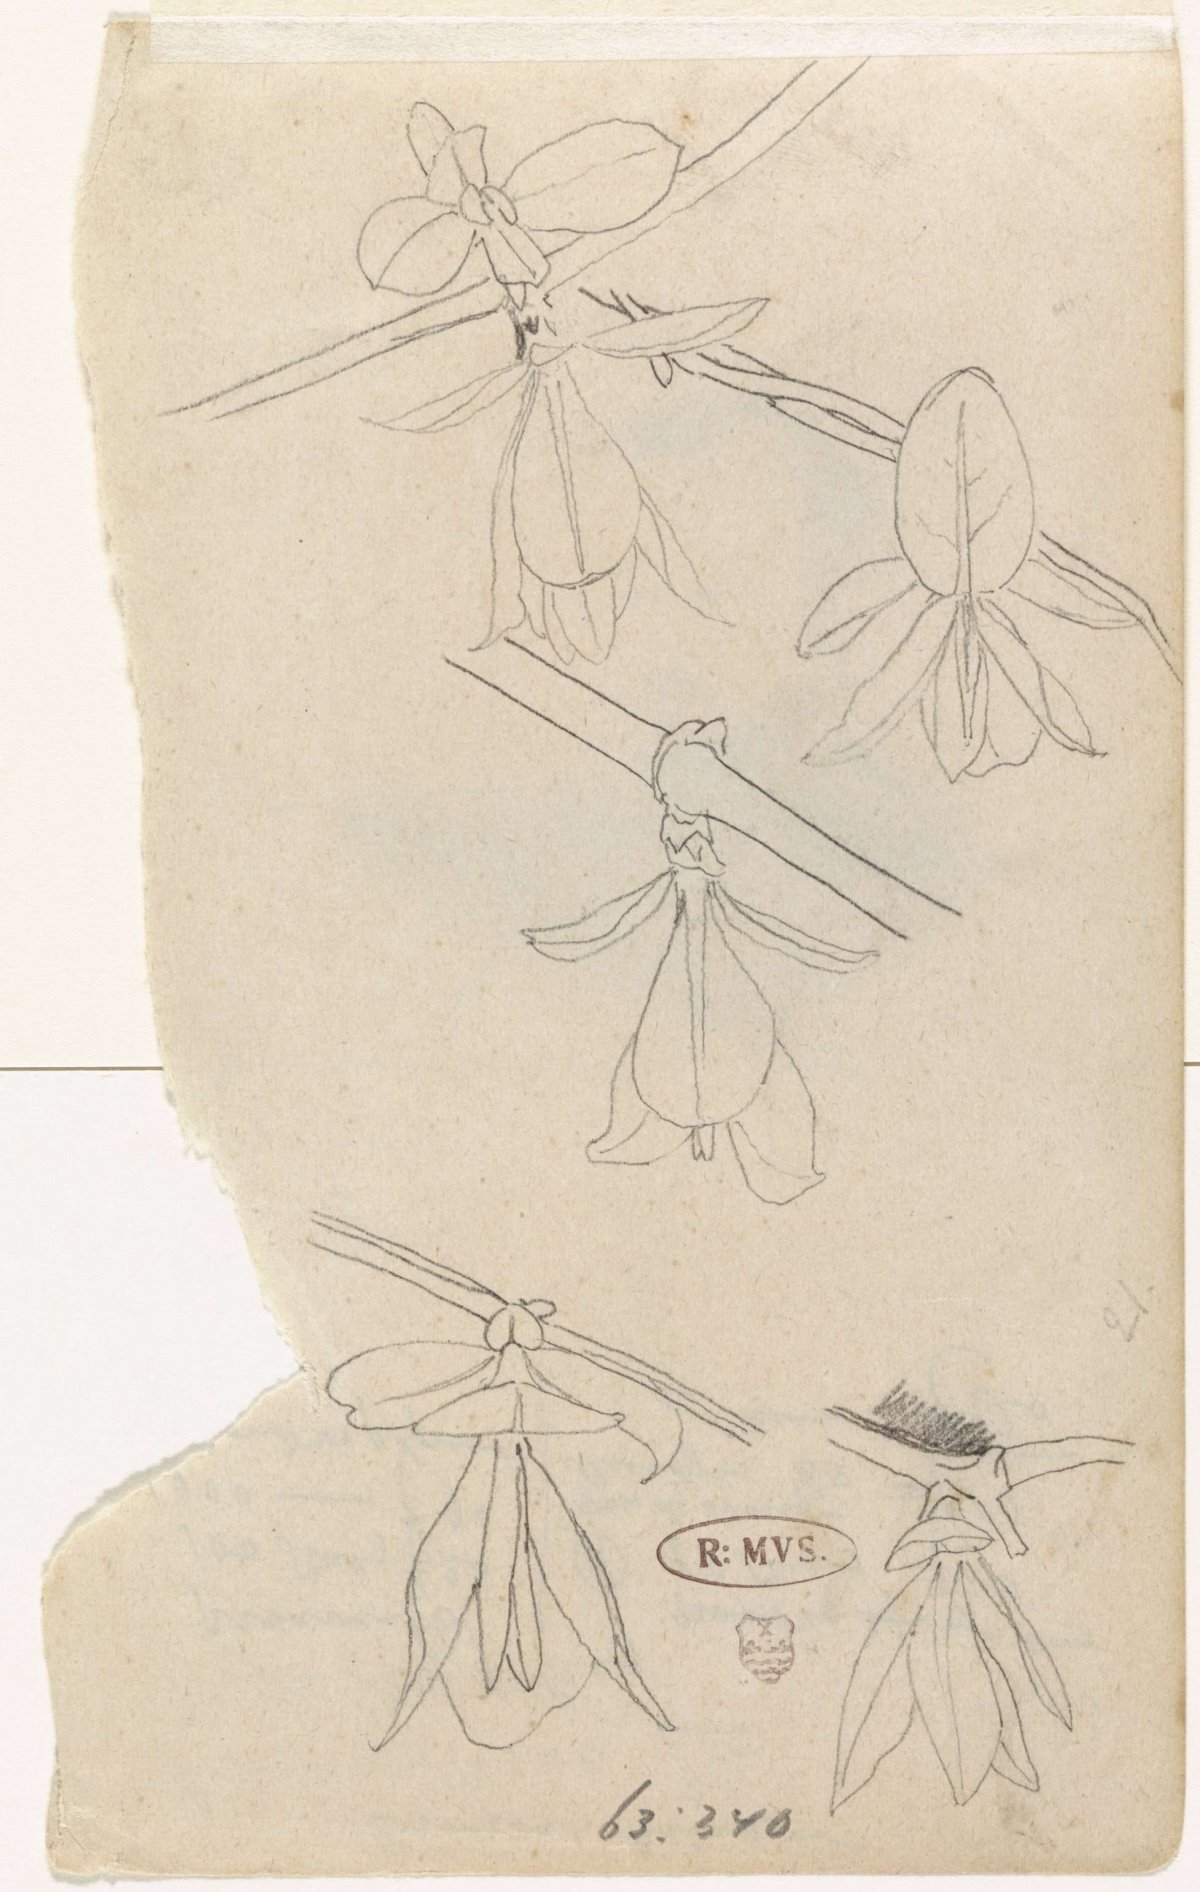 Studies of the flower of the magnolia, Gerrit Willem Dijsselhof, 1876 - 1924